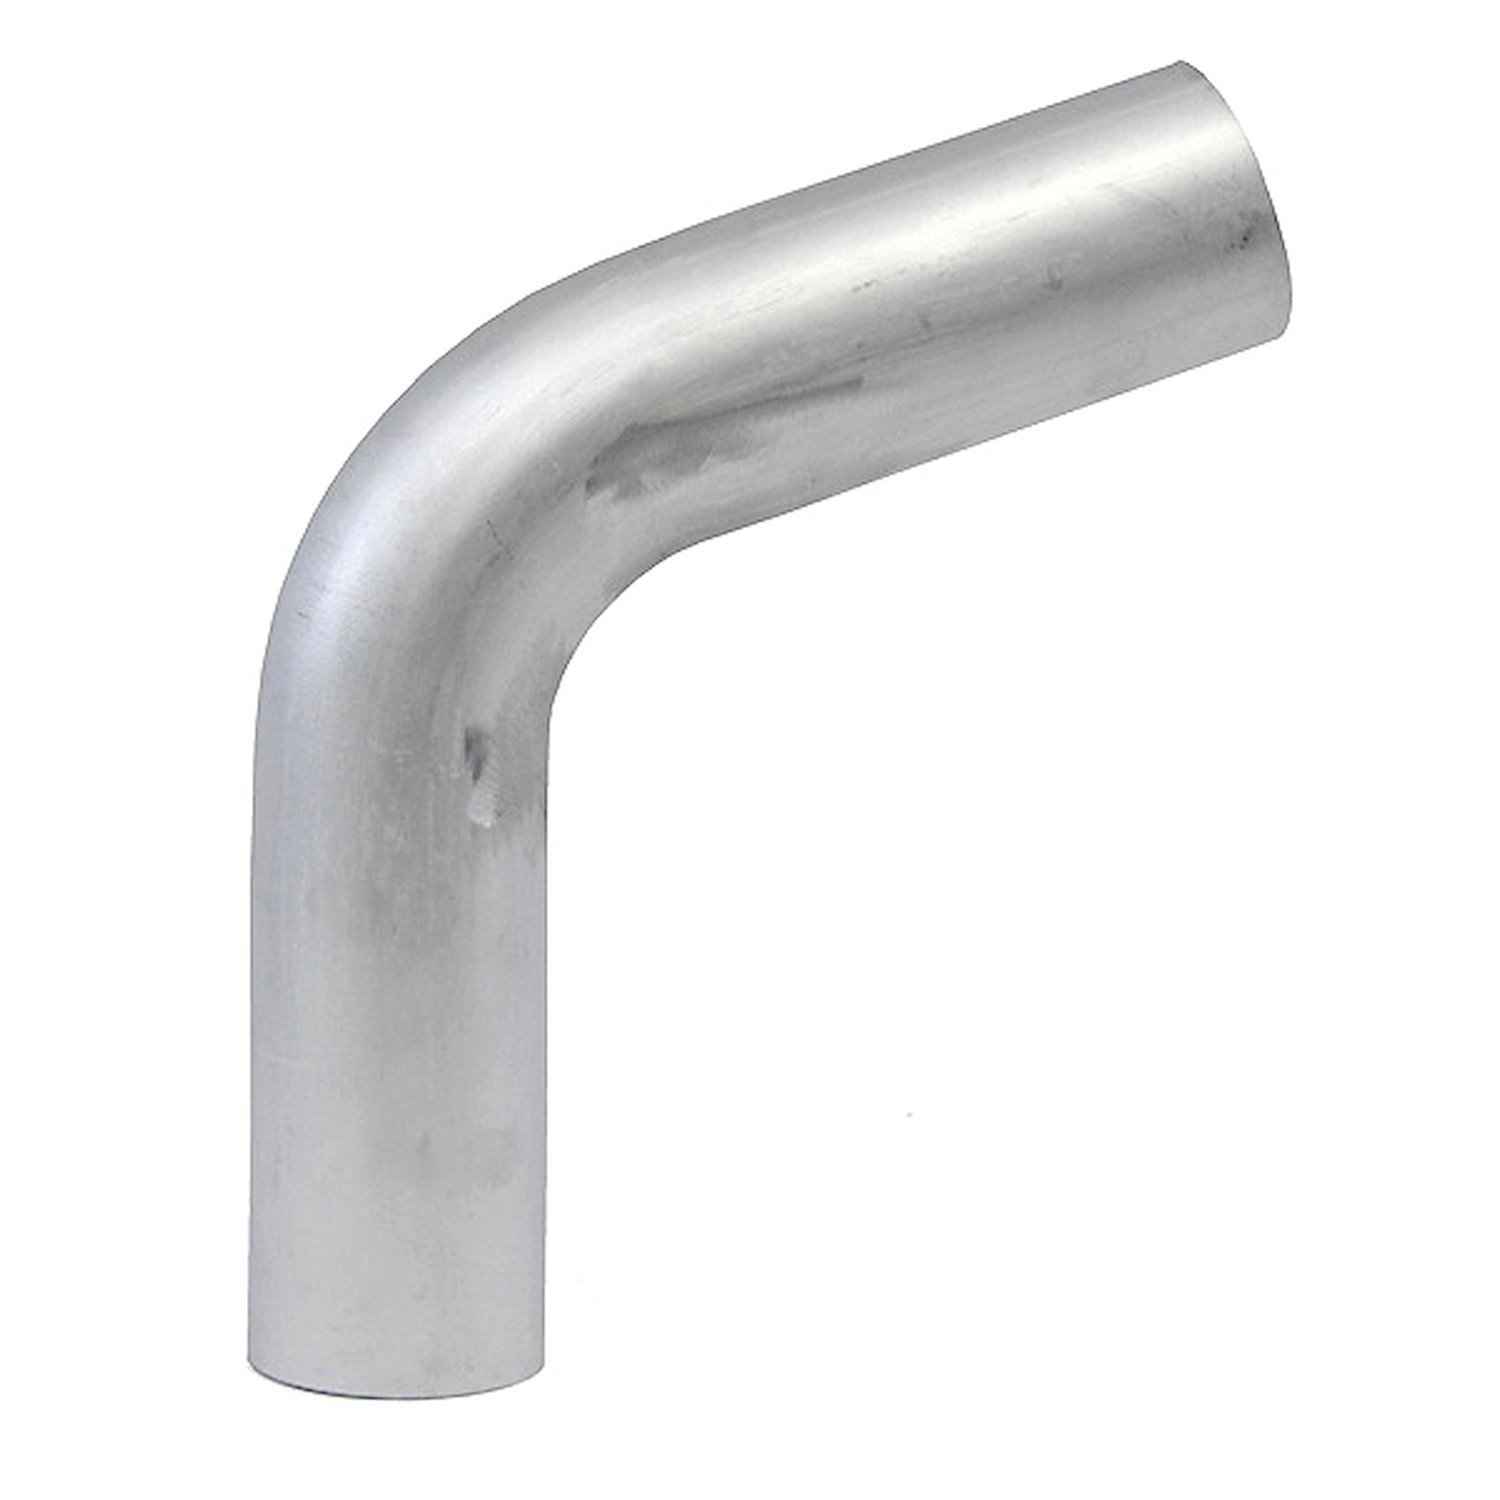 AT70-325-CLR-35 Aluminum Elbow Tube, 6061 Aluminum, 70-Degree Bend Elbow Tubing, 3-1/4 in. OD, Tight Radius, 3-1/2 in. CLR